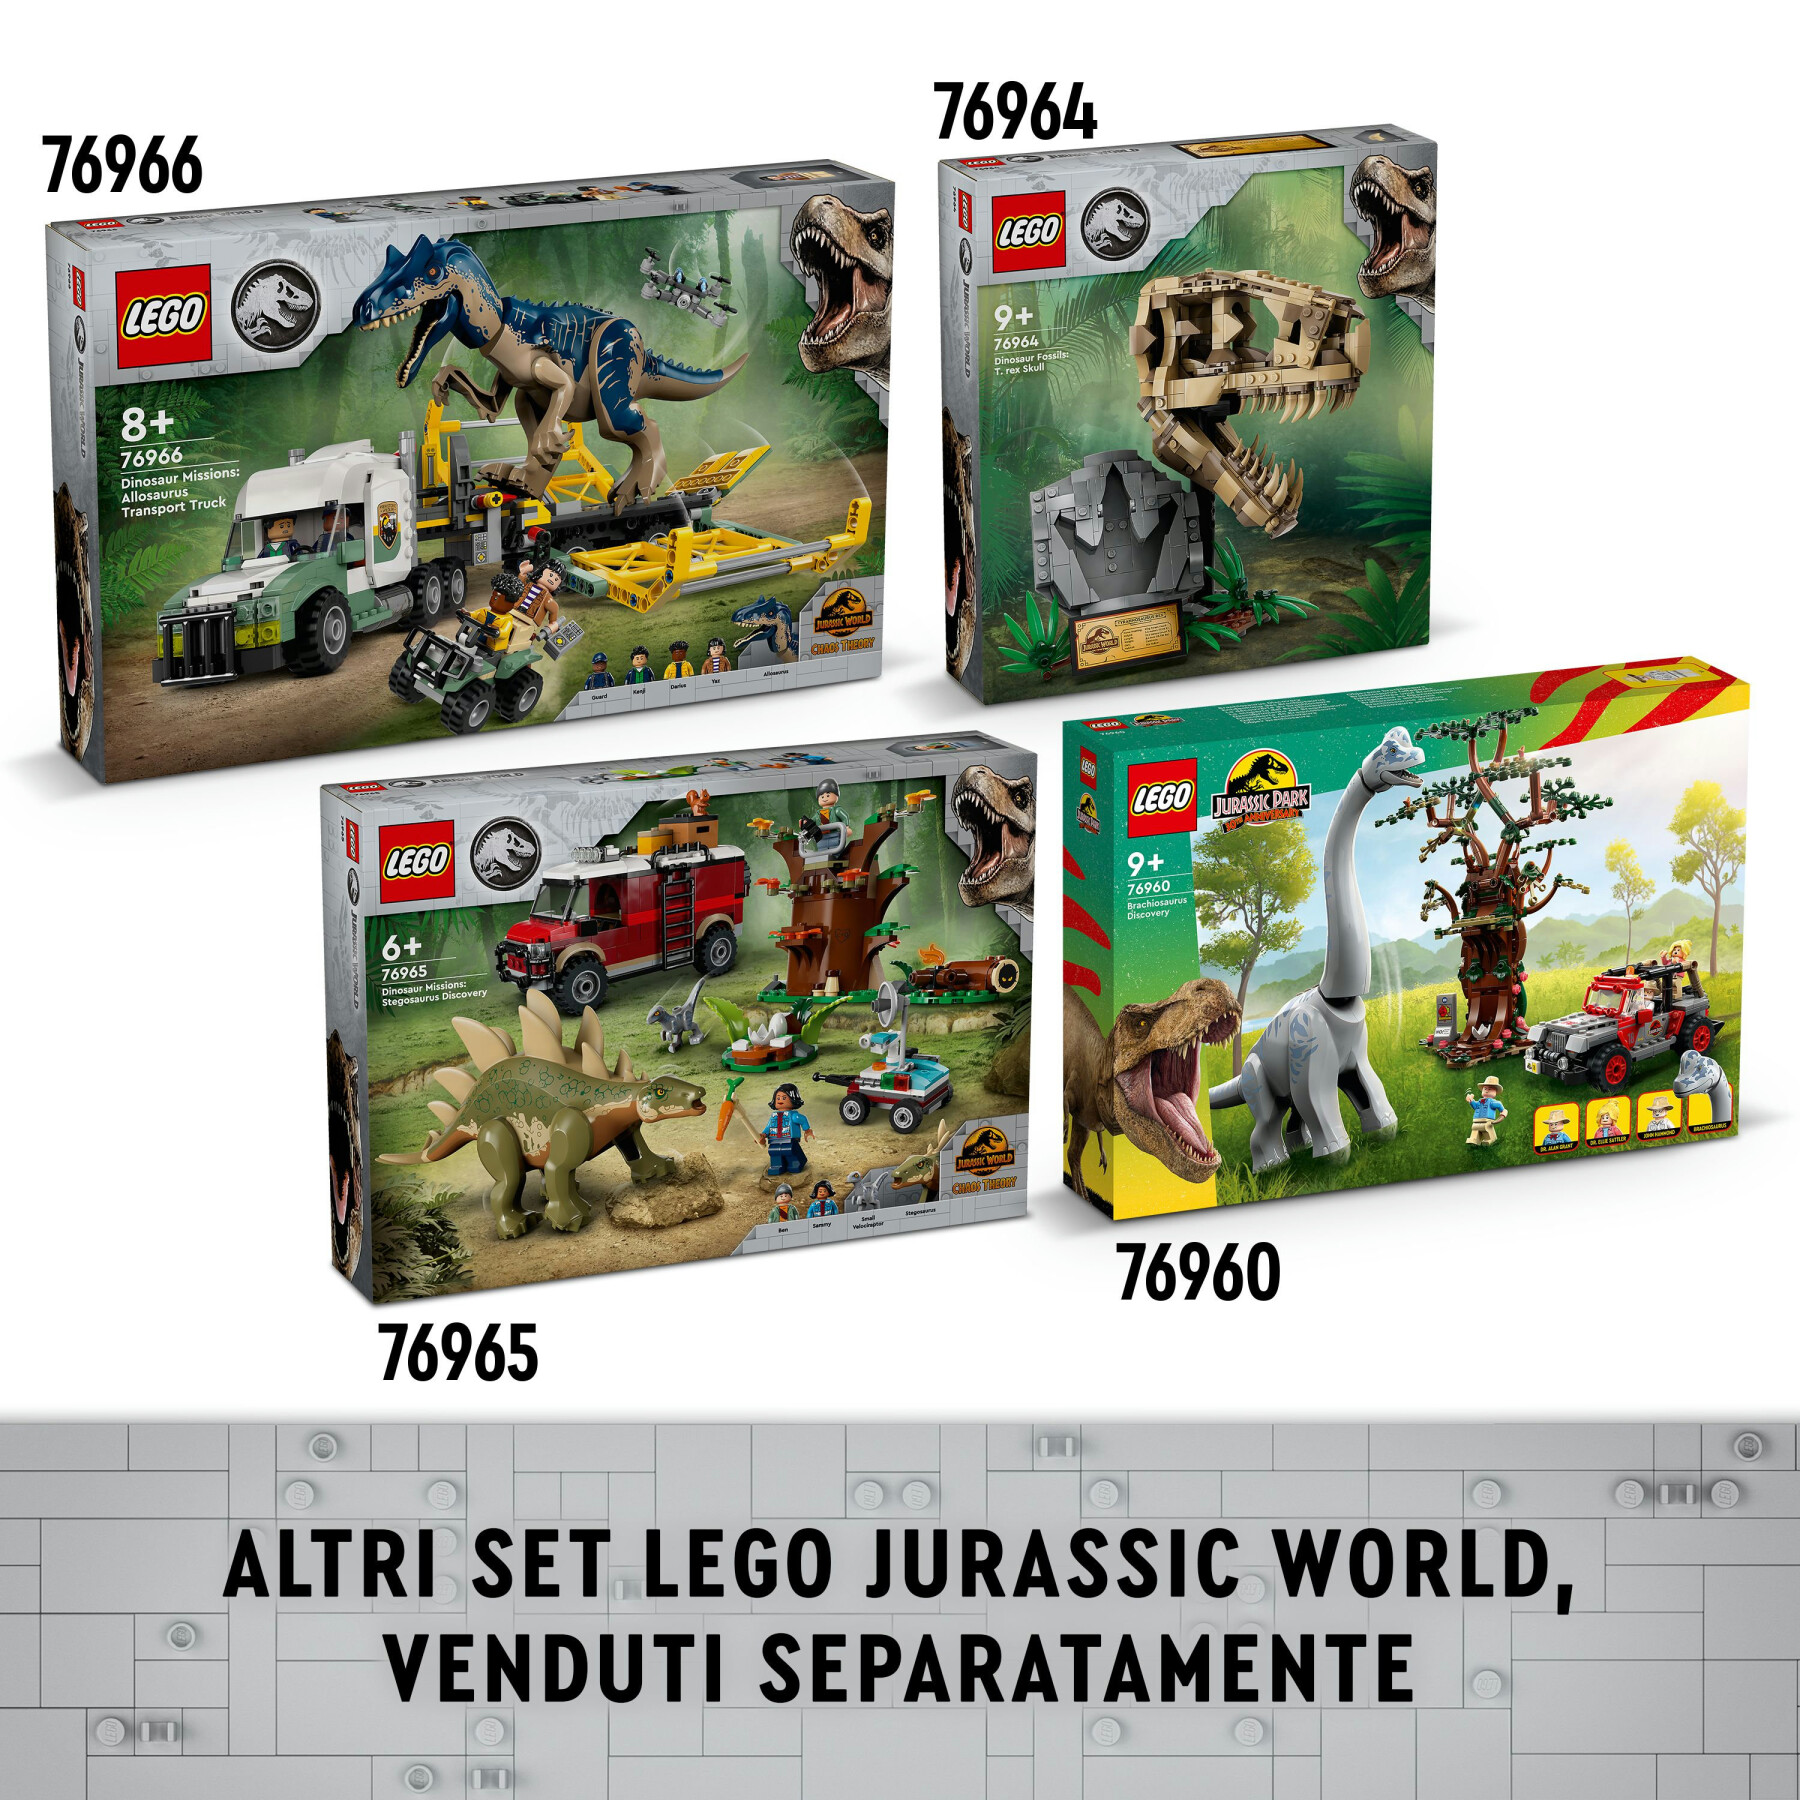 Lego jurassic world 76962 baby bumpy: anchilosauro, giocattolo d'avventura per i fan del cretaceo, giochi creativi bambini 7+ - LEGO JURASSIC PARK/W